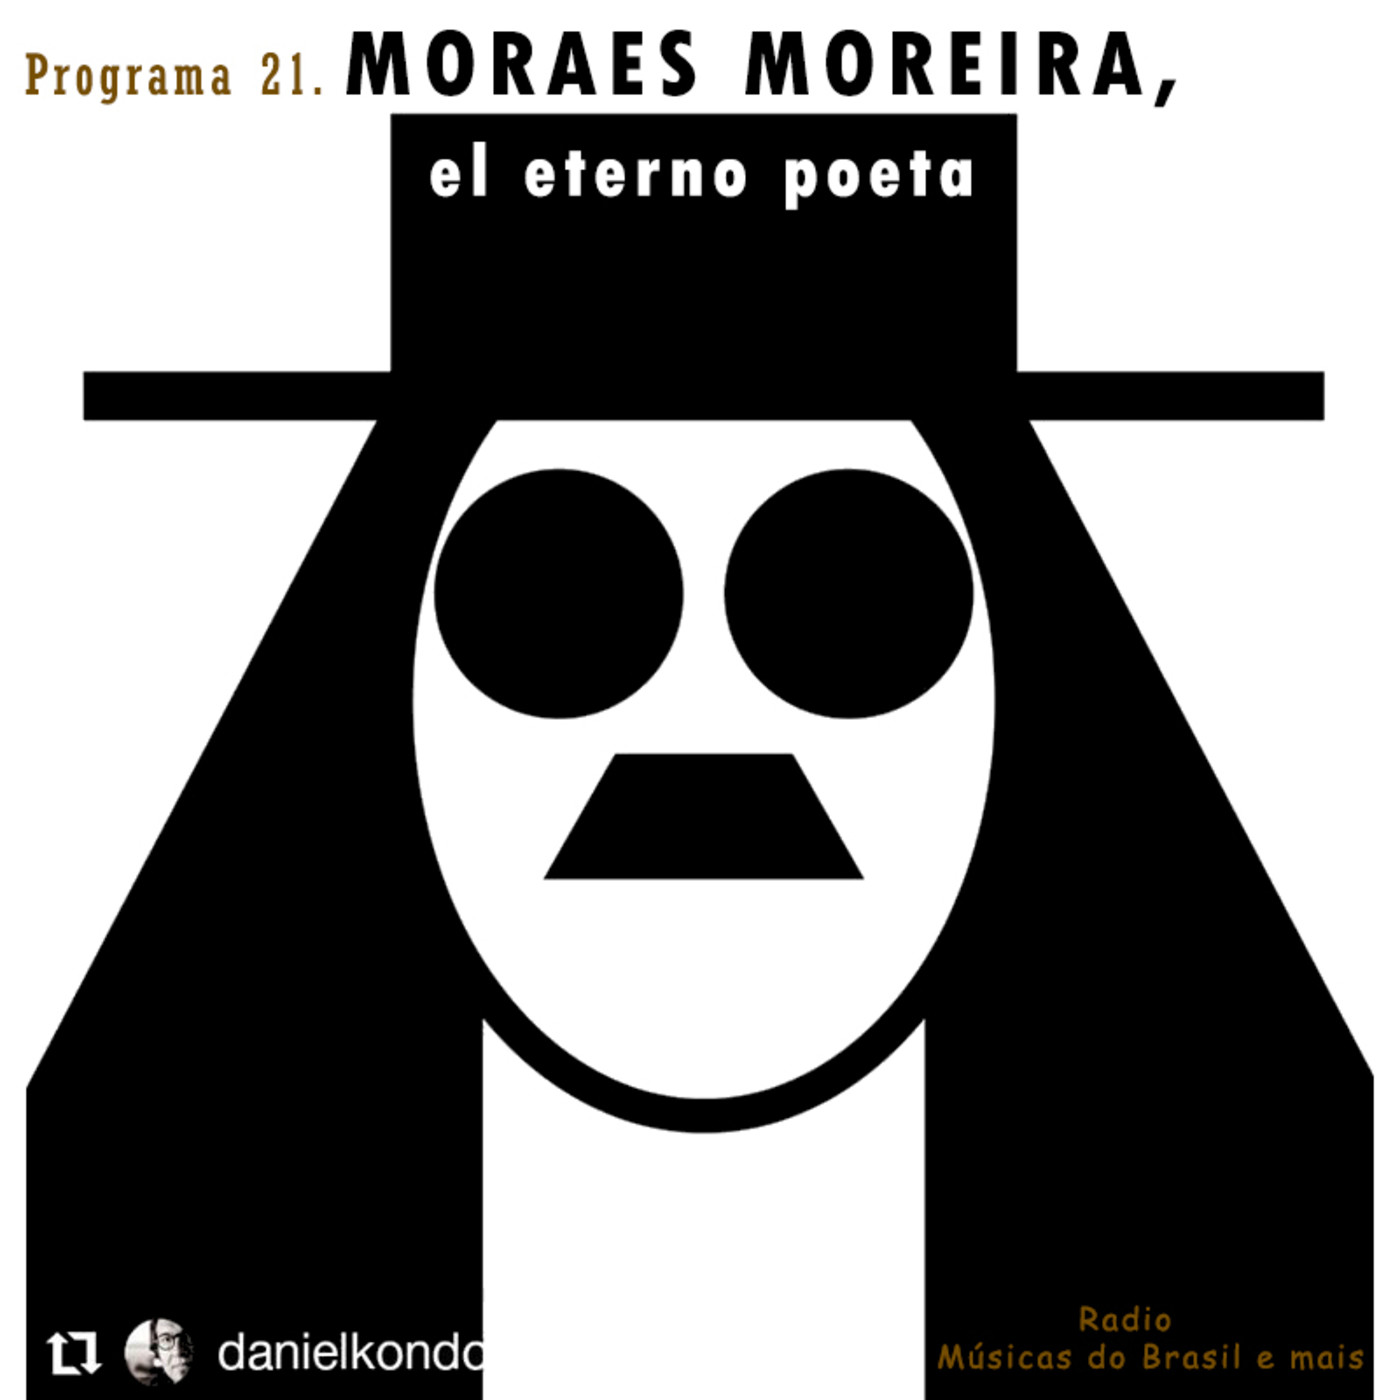 Programa 21. "Moraes Moreira, el eterno poeta" (Radio Musicas do Brasil e mais)